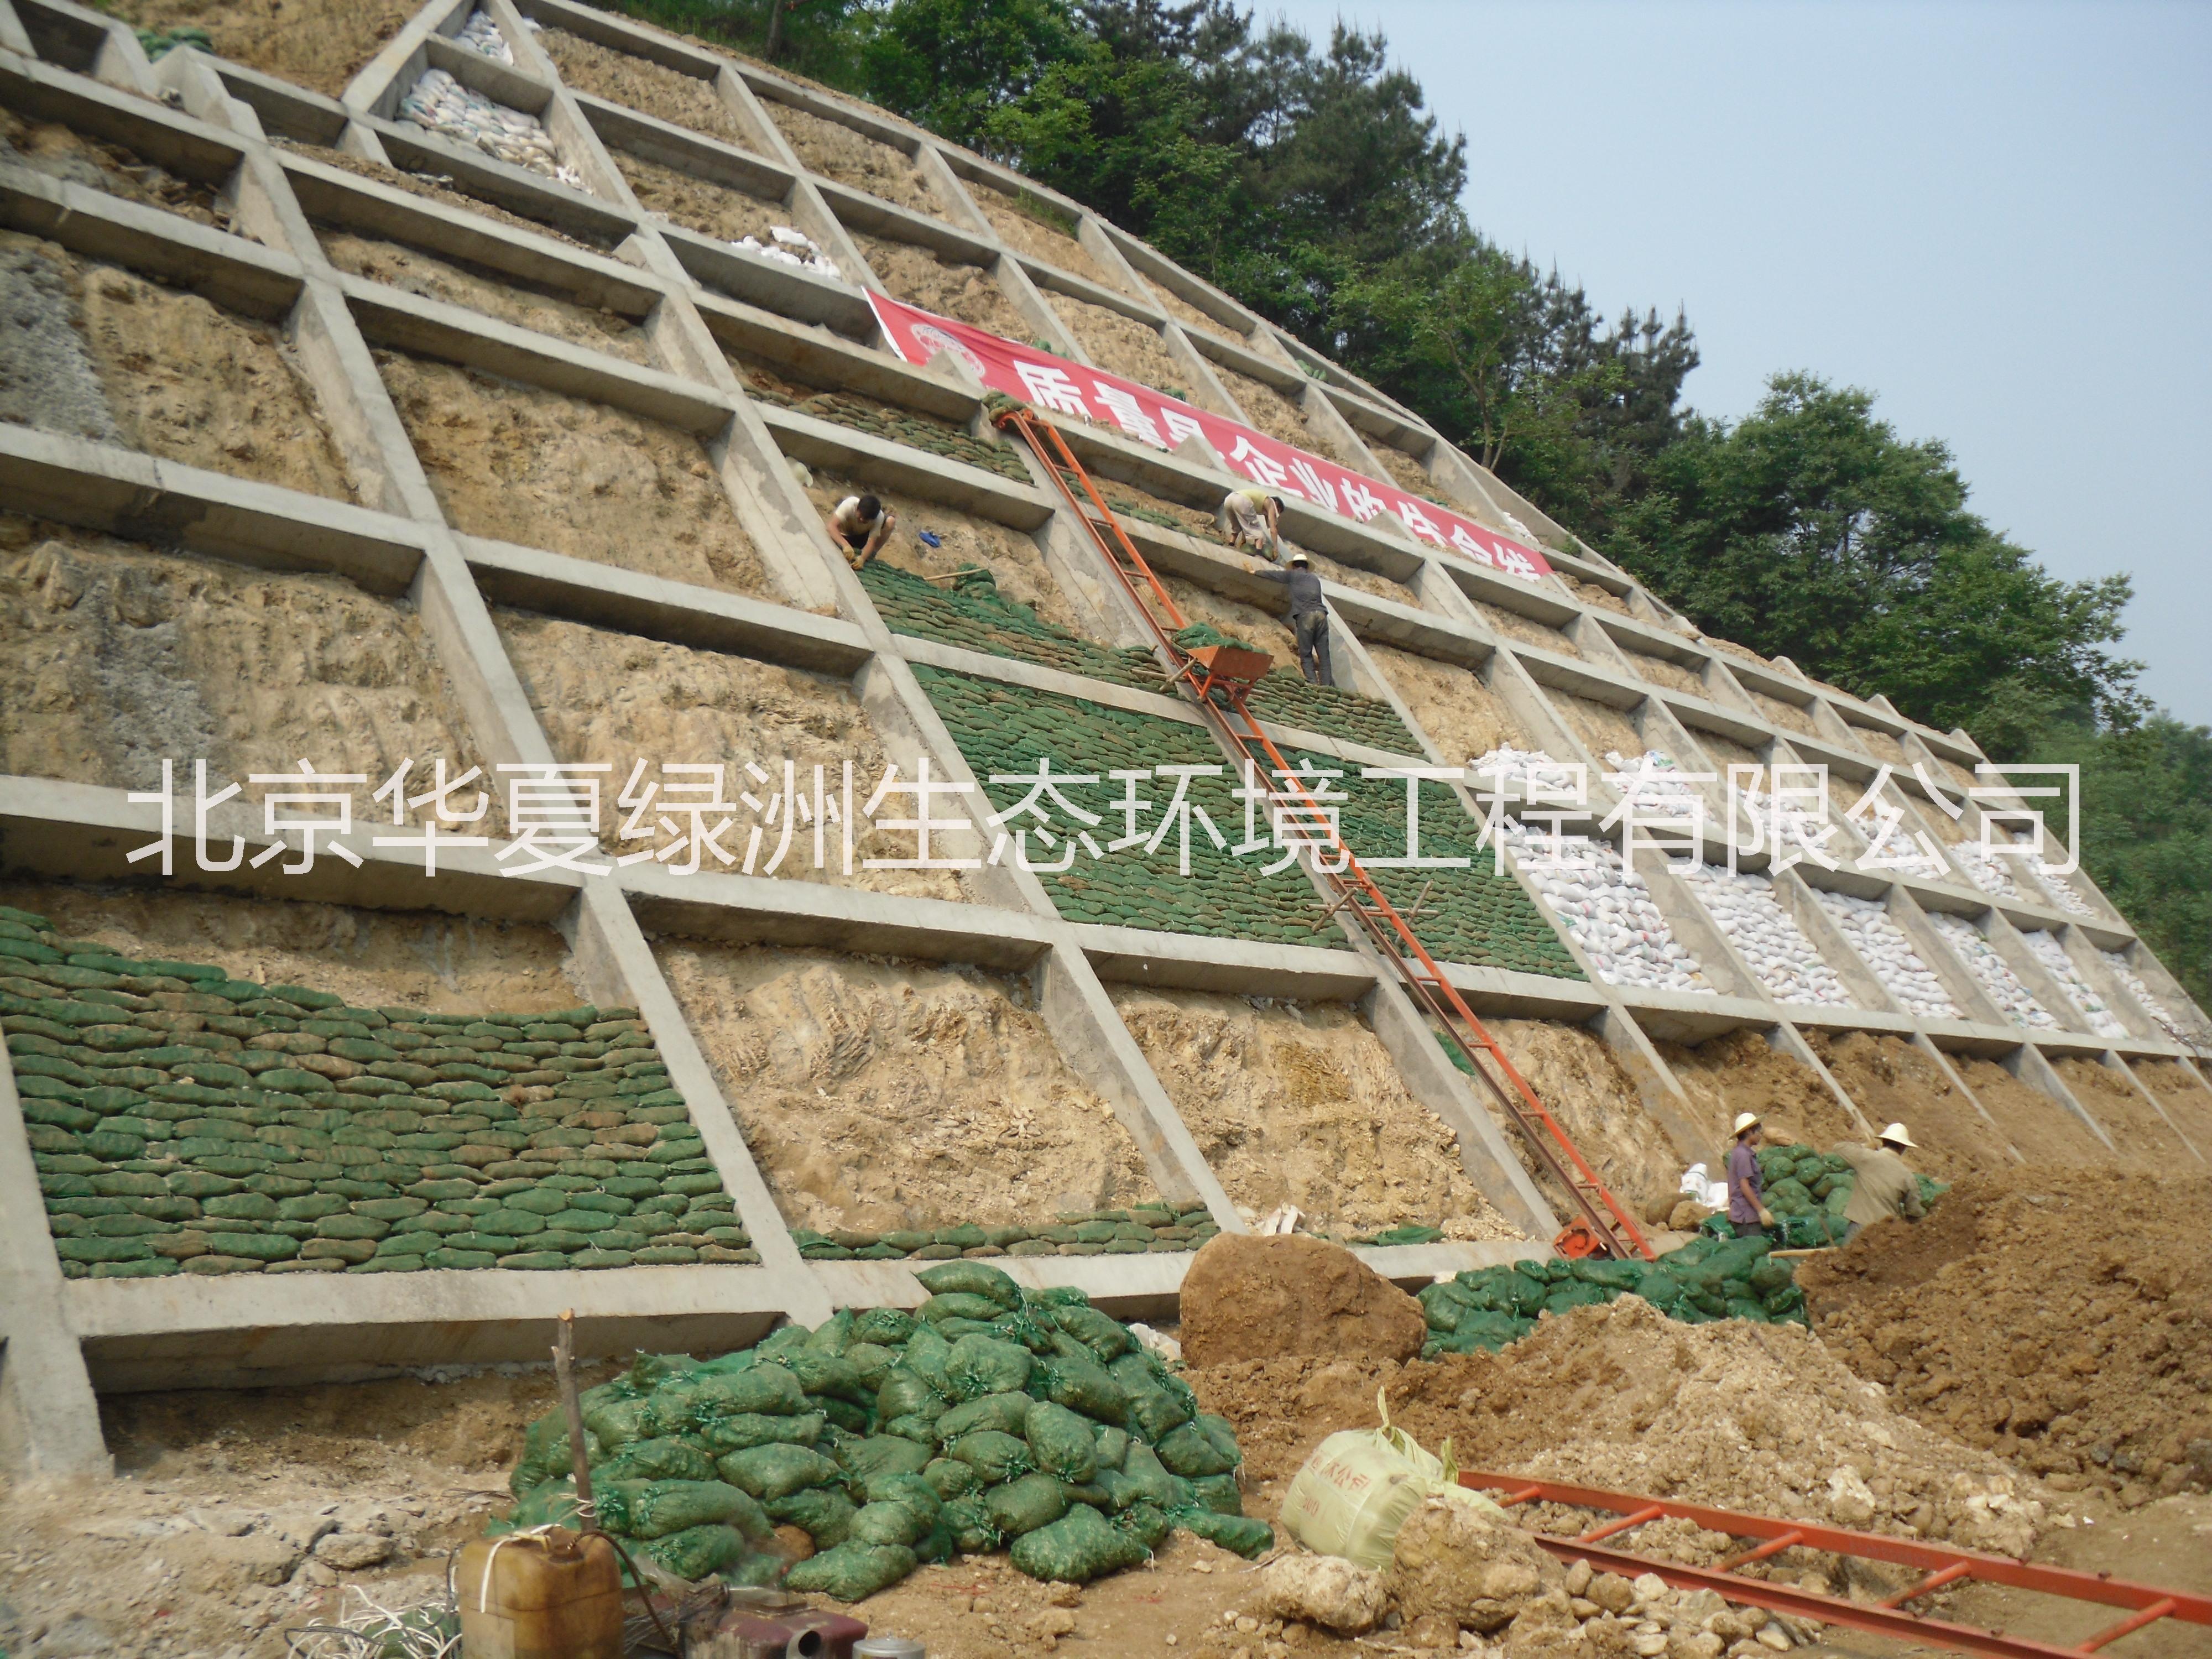 北京喷播绿化技术边坡 生态混凝土护坡技术 生态混凝土绿化护坡防洪工程 生态混凝土绿化护坡生态砼护坡 边坡框格梁植生袋护坡